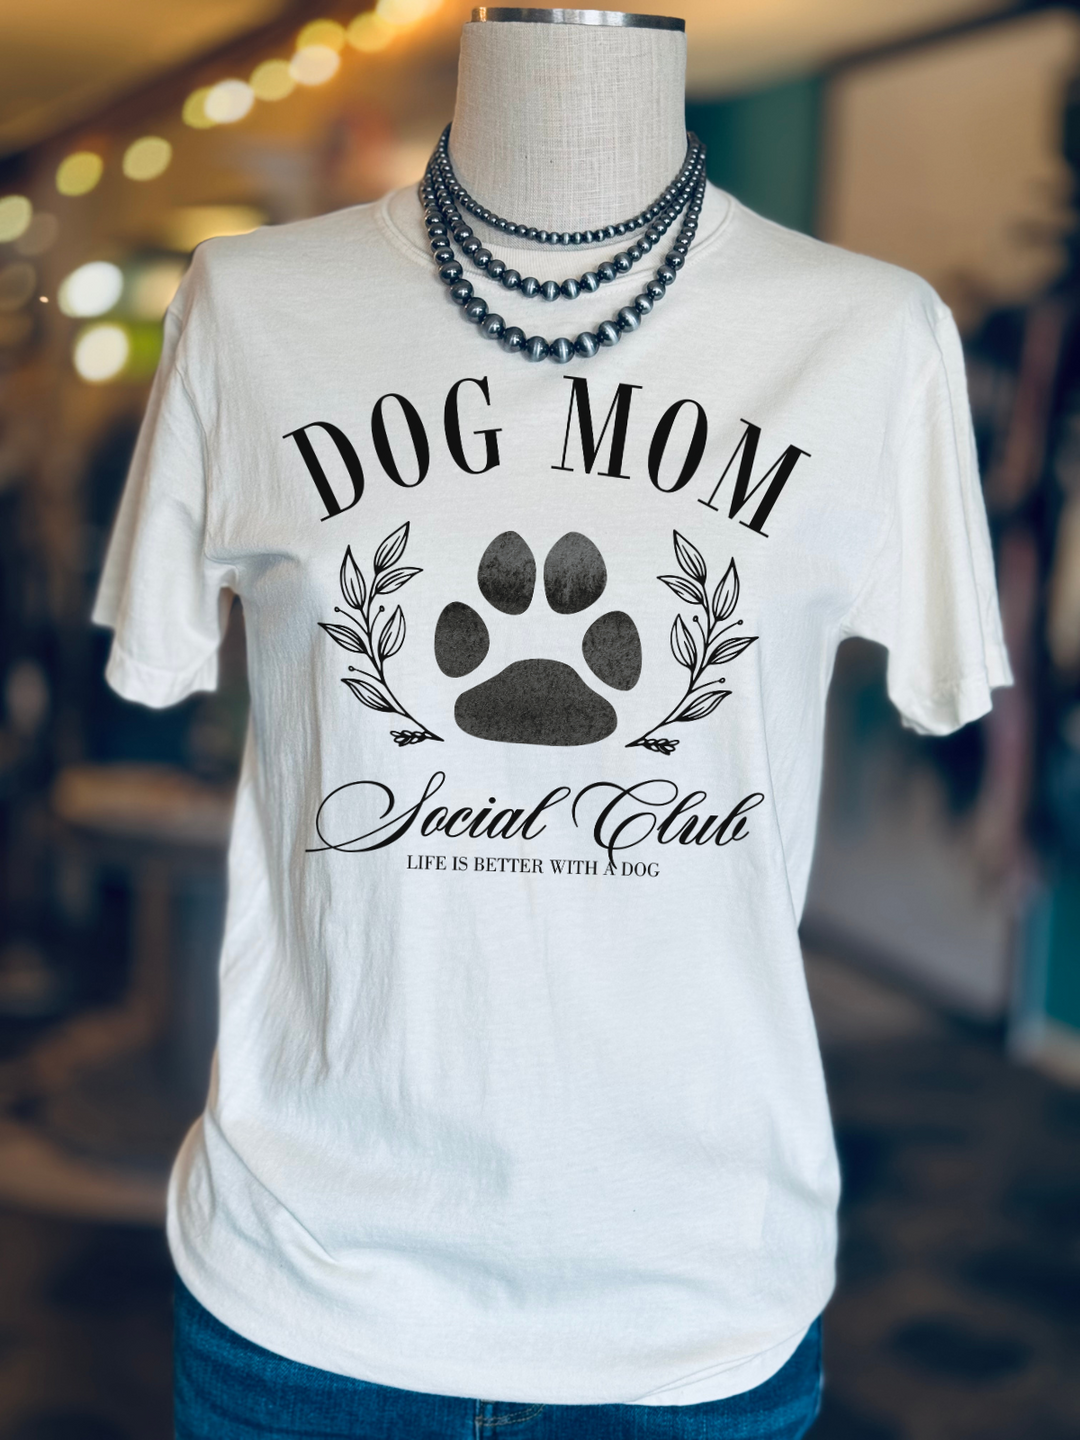 Dog Mom Social Club Graphic Tee